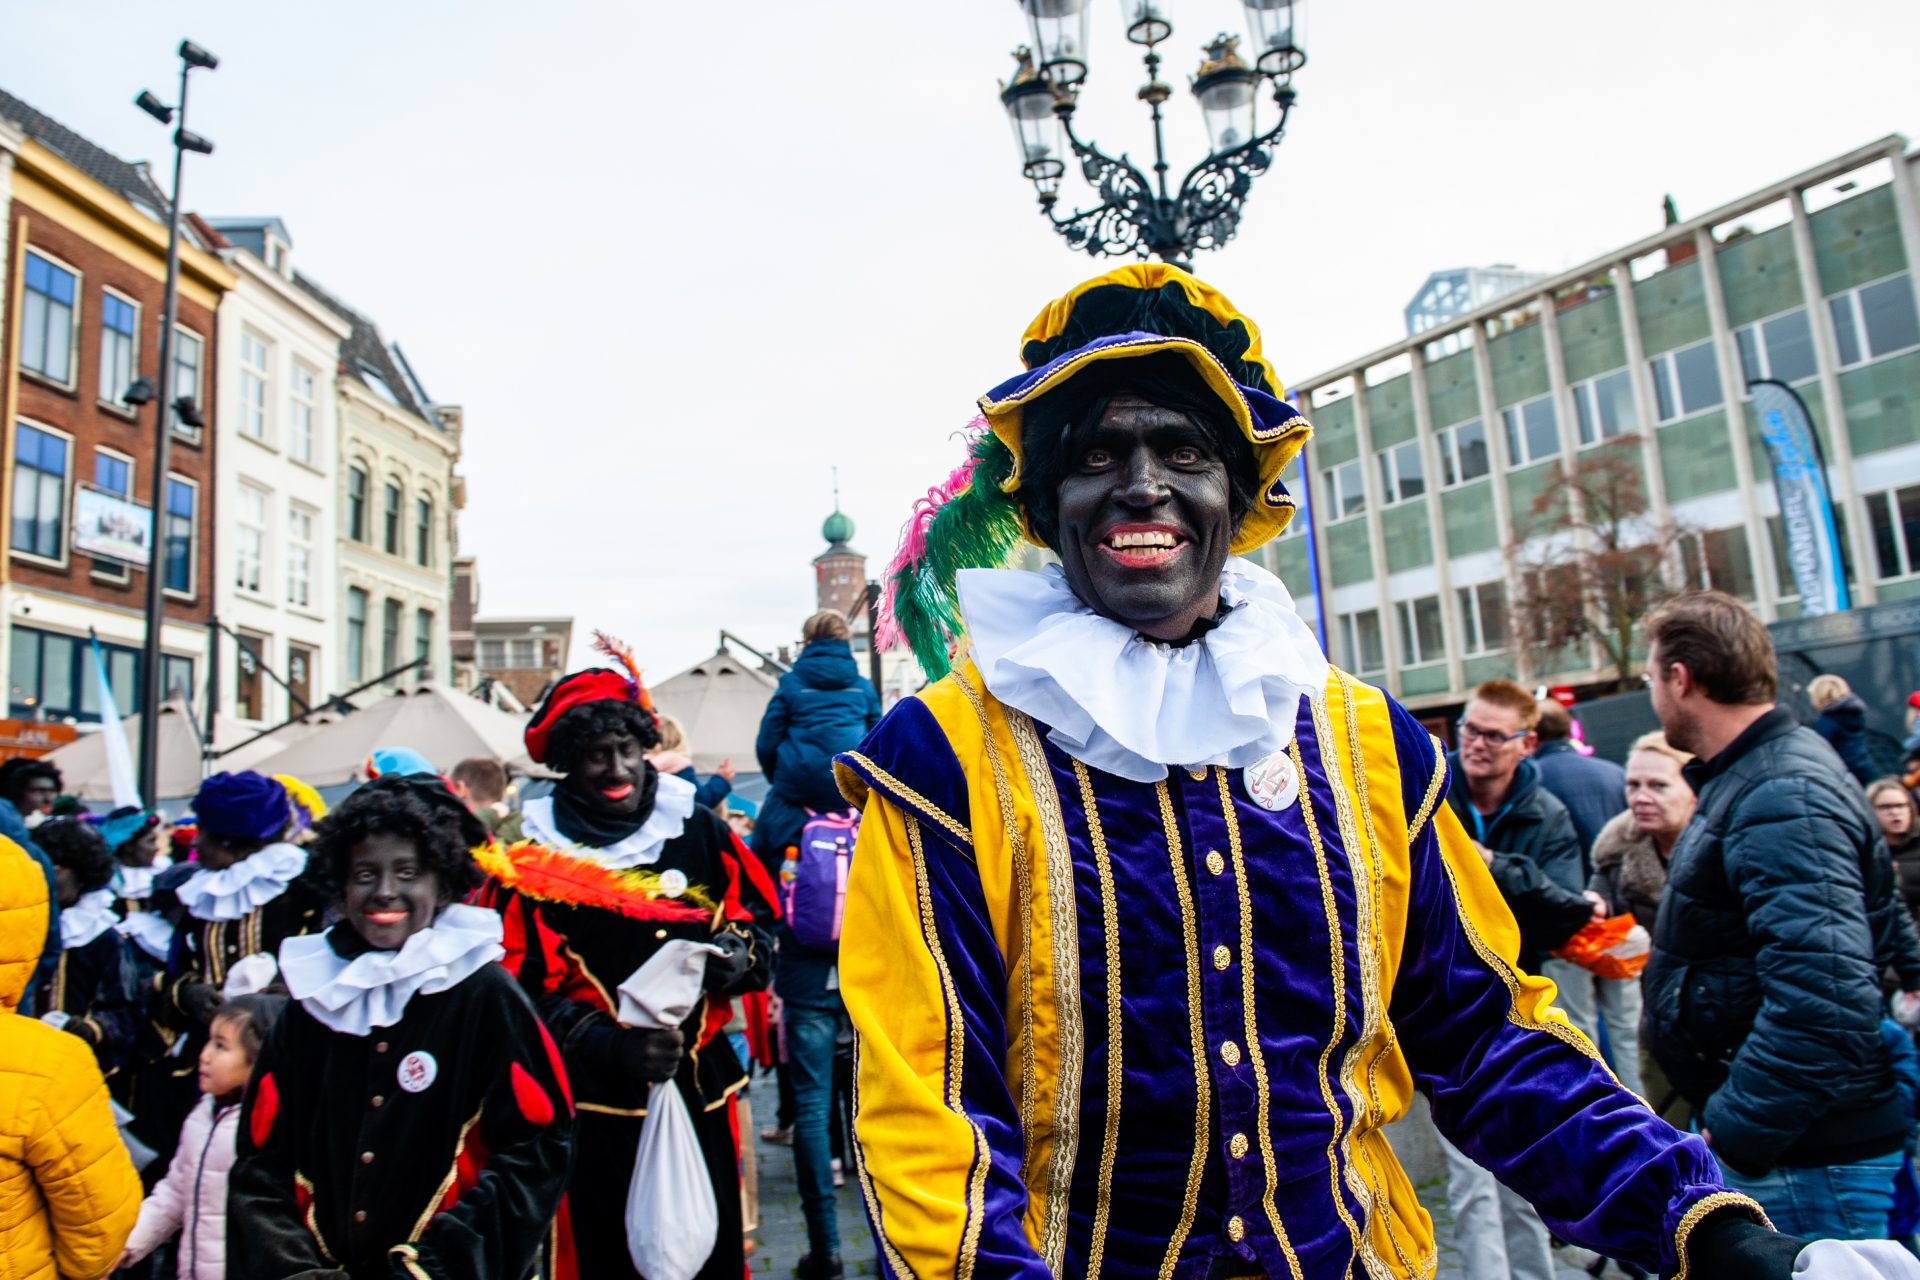 Shades of Zwarte Piet